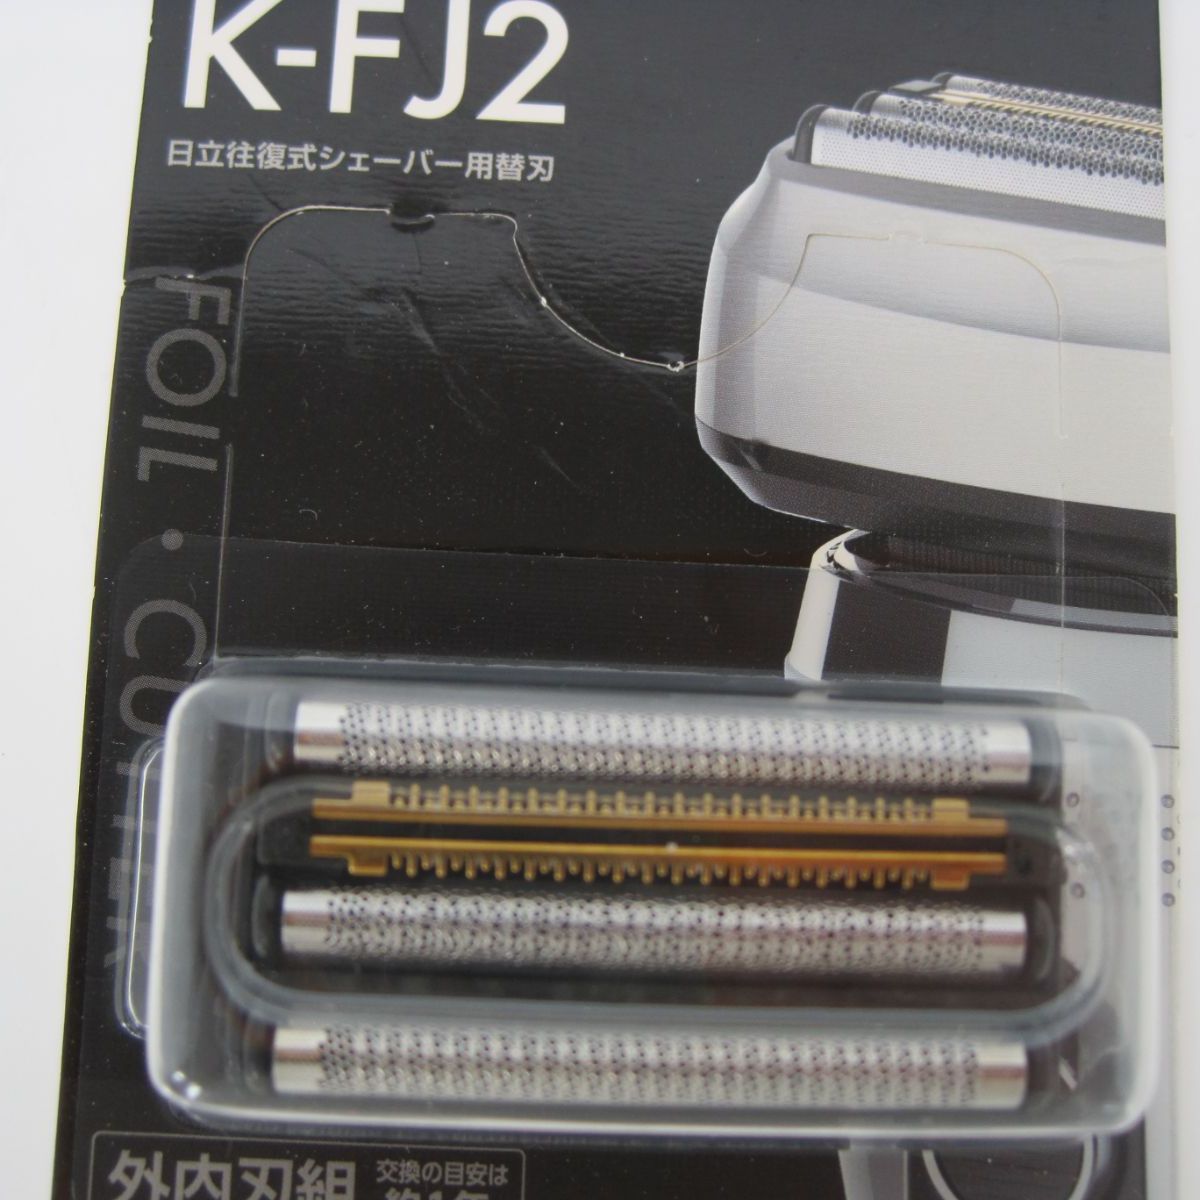 日立 シェーバー用替刃 K-FJ2 - 美容/健康